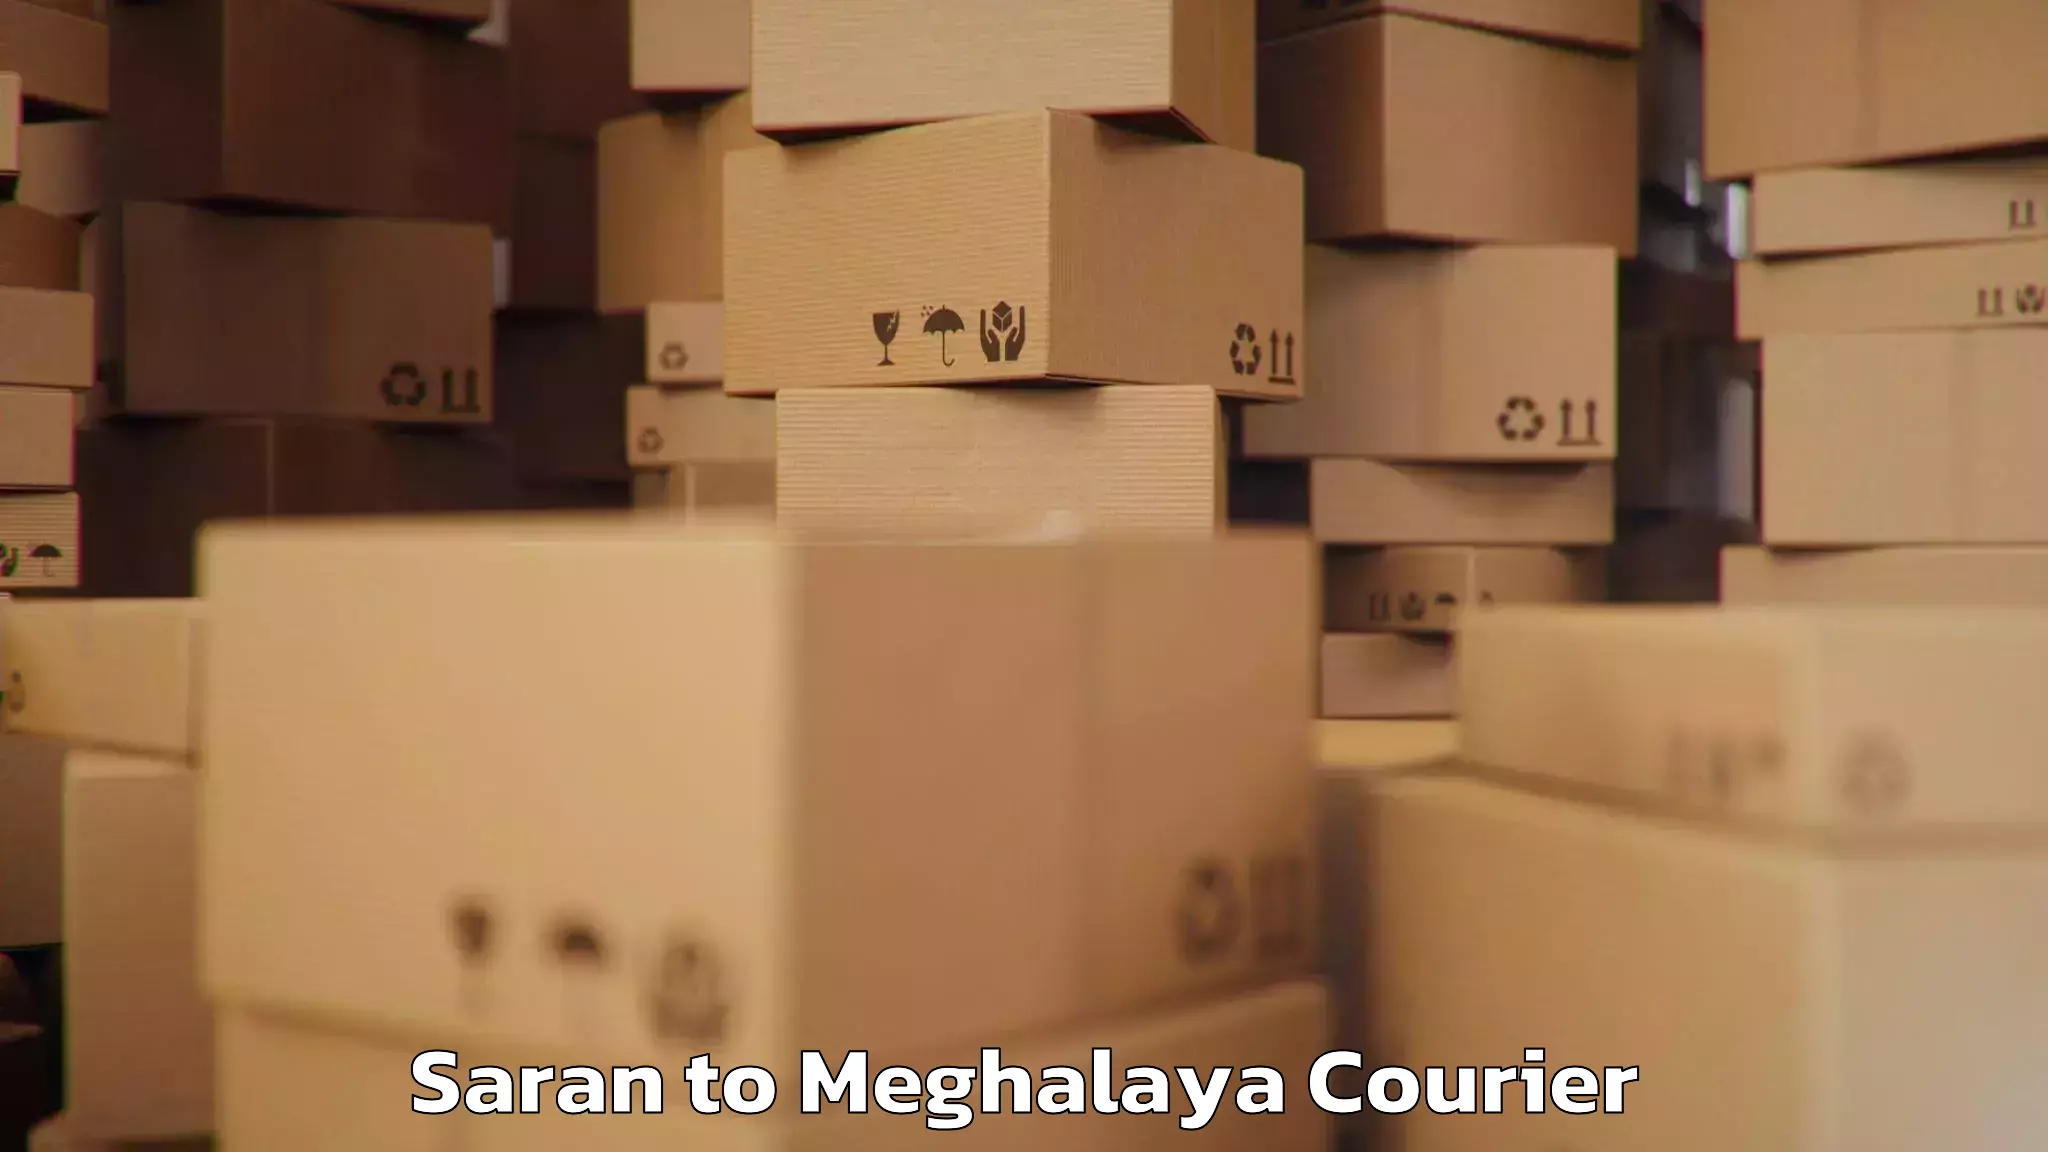 Luggage shipping planner Saran to Meghalaya